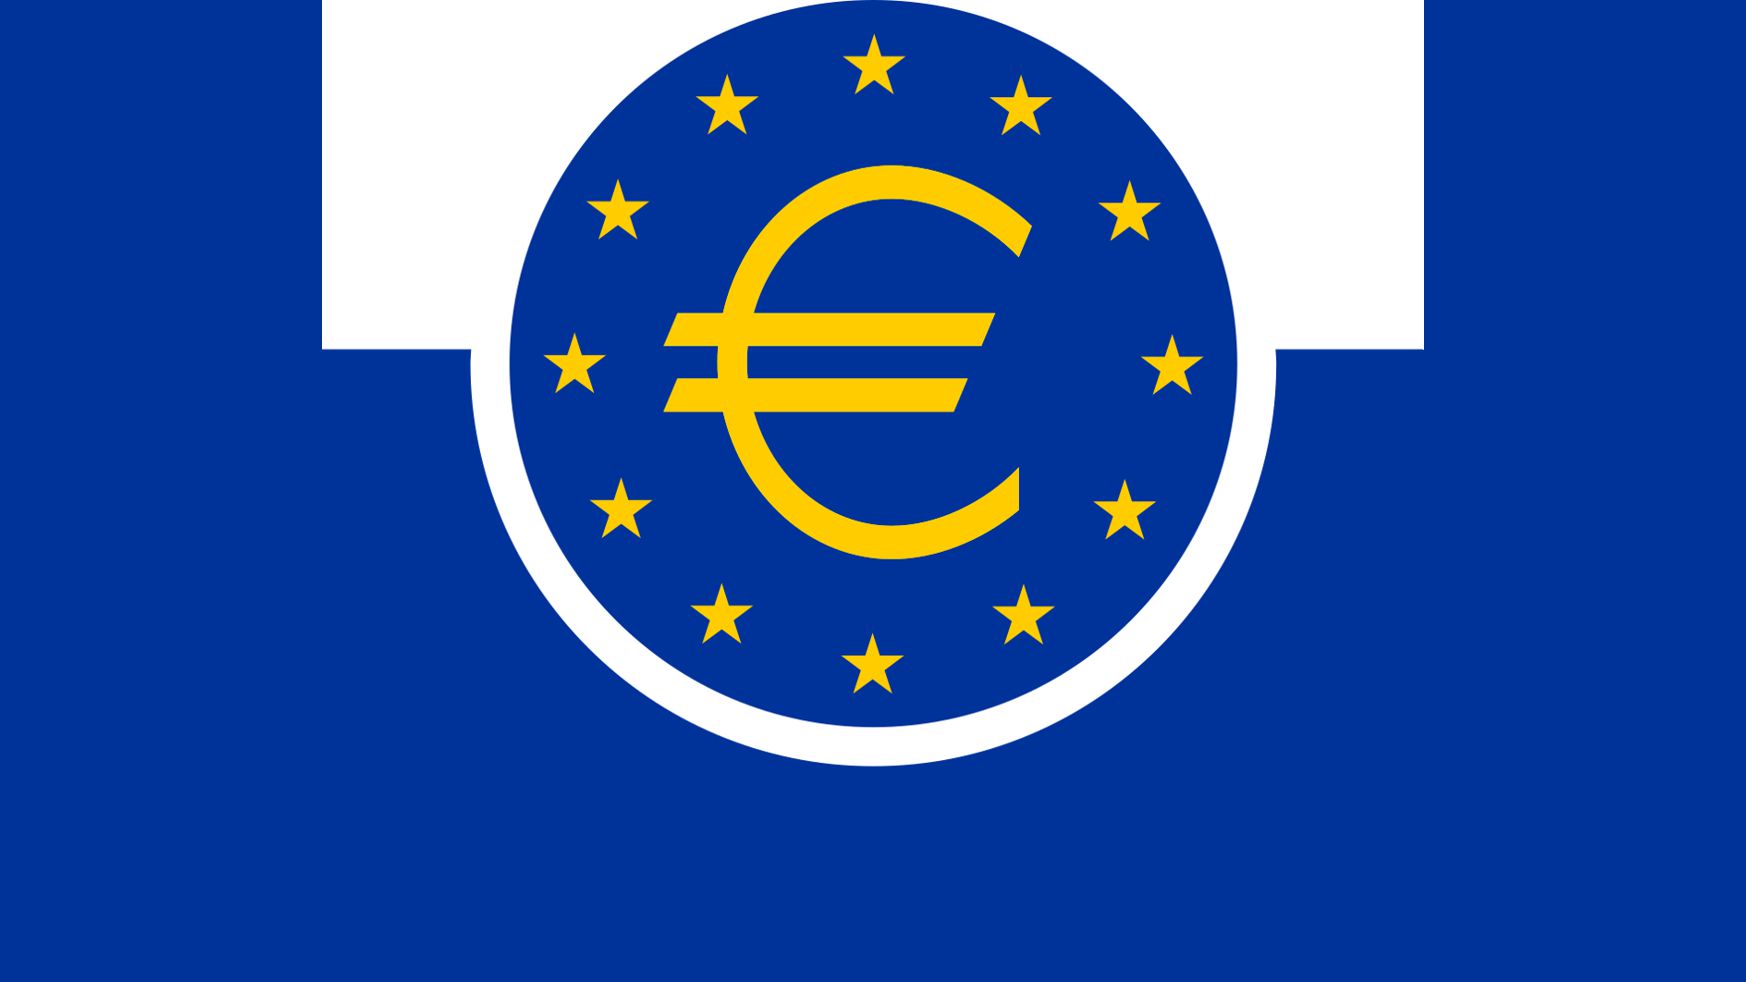 European central bank. Европейская система центральных банков лого. ЕЦБ эмблема. Европейский Центральный банк эмблема. Европейский Центральный банк (ЕЦБ).